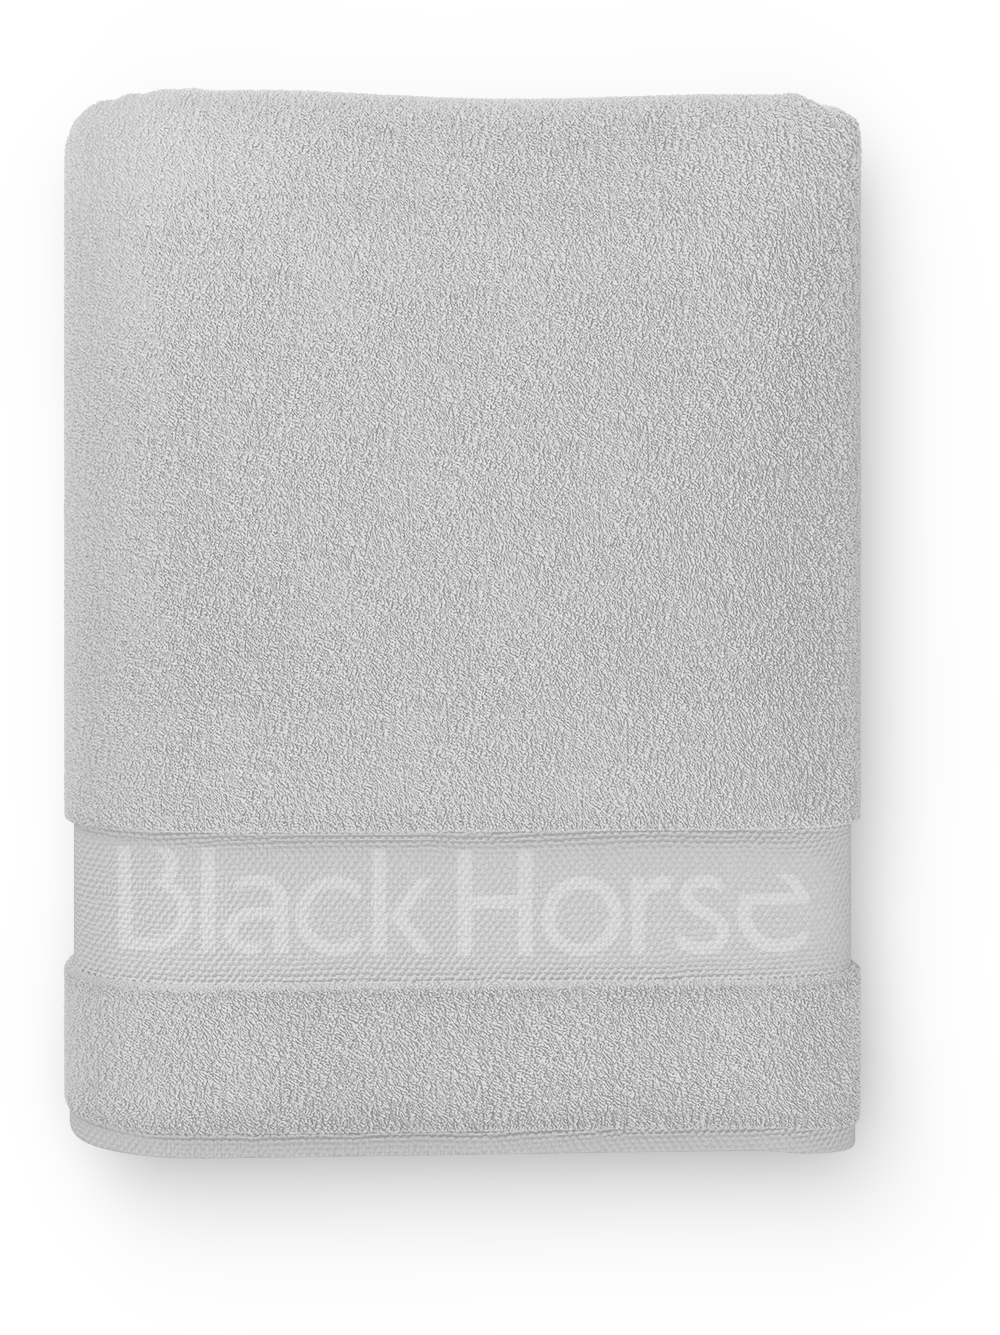 blackhorse_towel03